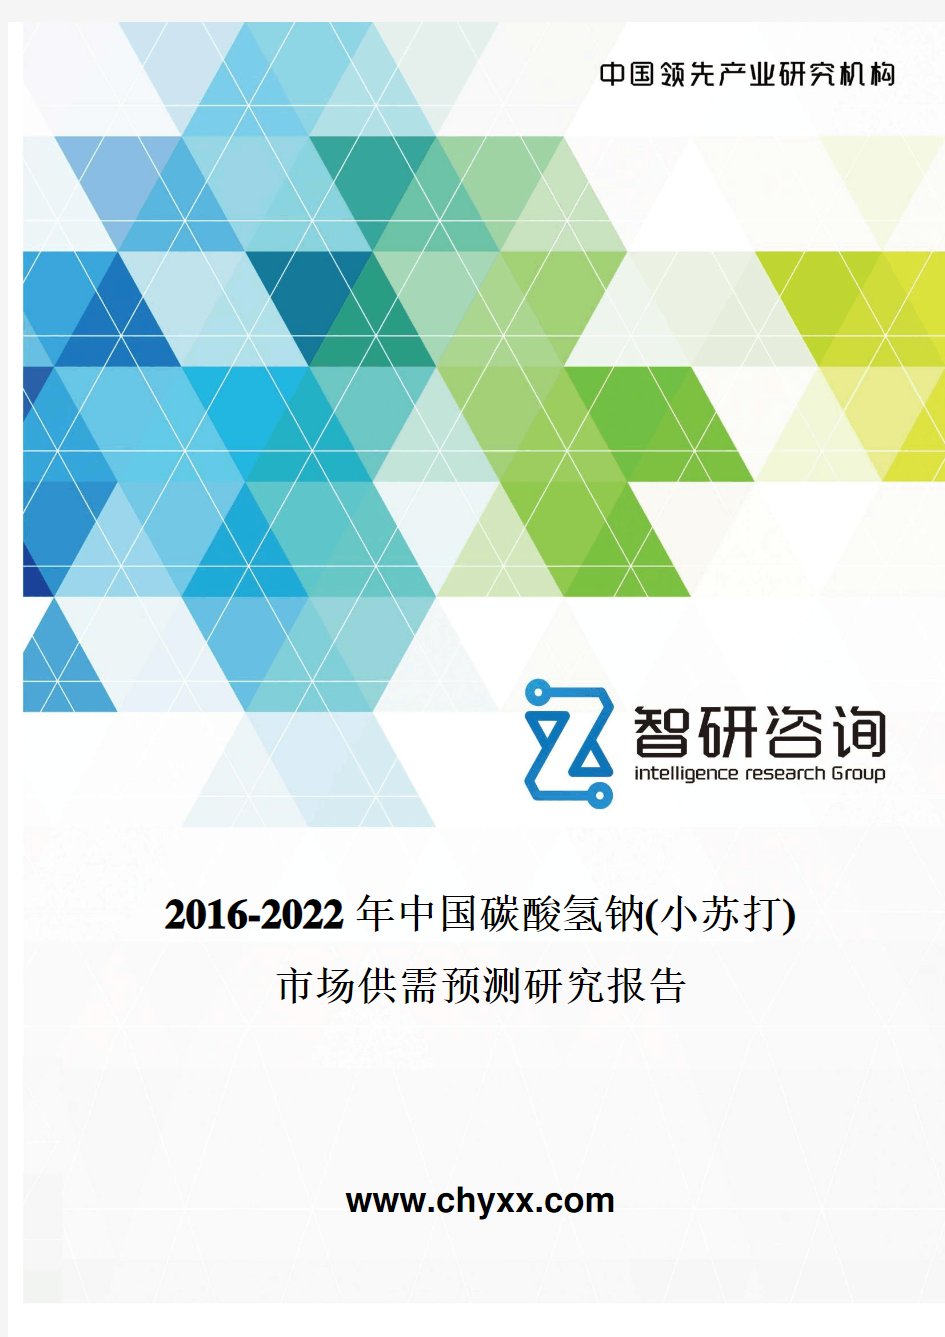 2016-2022年中国碳酸氢钠(小苏打)市场供需预测研究报告